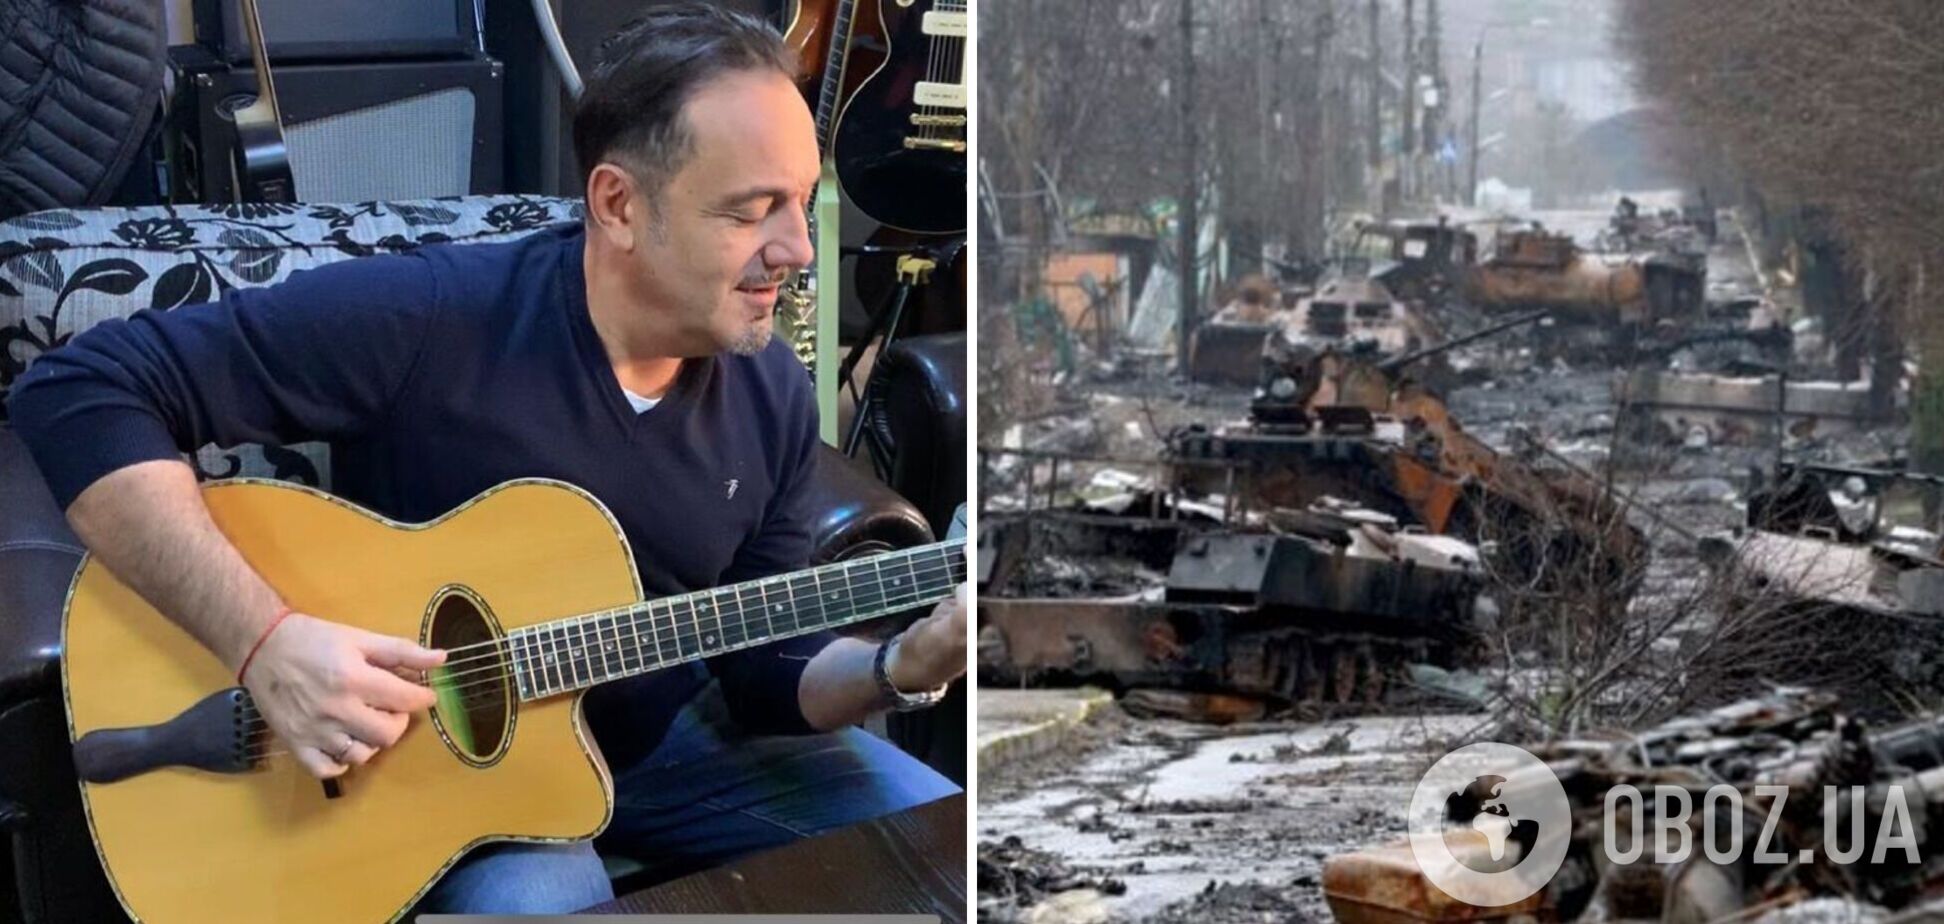 Гарік Кричевський розповів, що в його будинку на Київщині жили окупанти: я не зміг зайти в дім, вкрали все